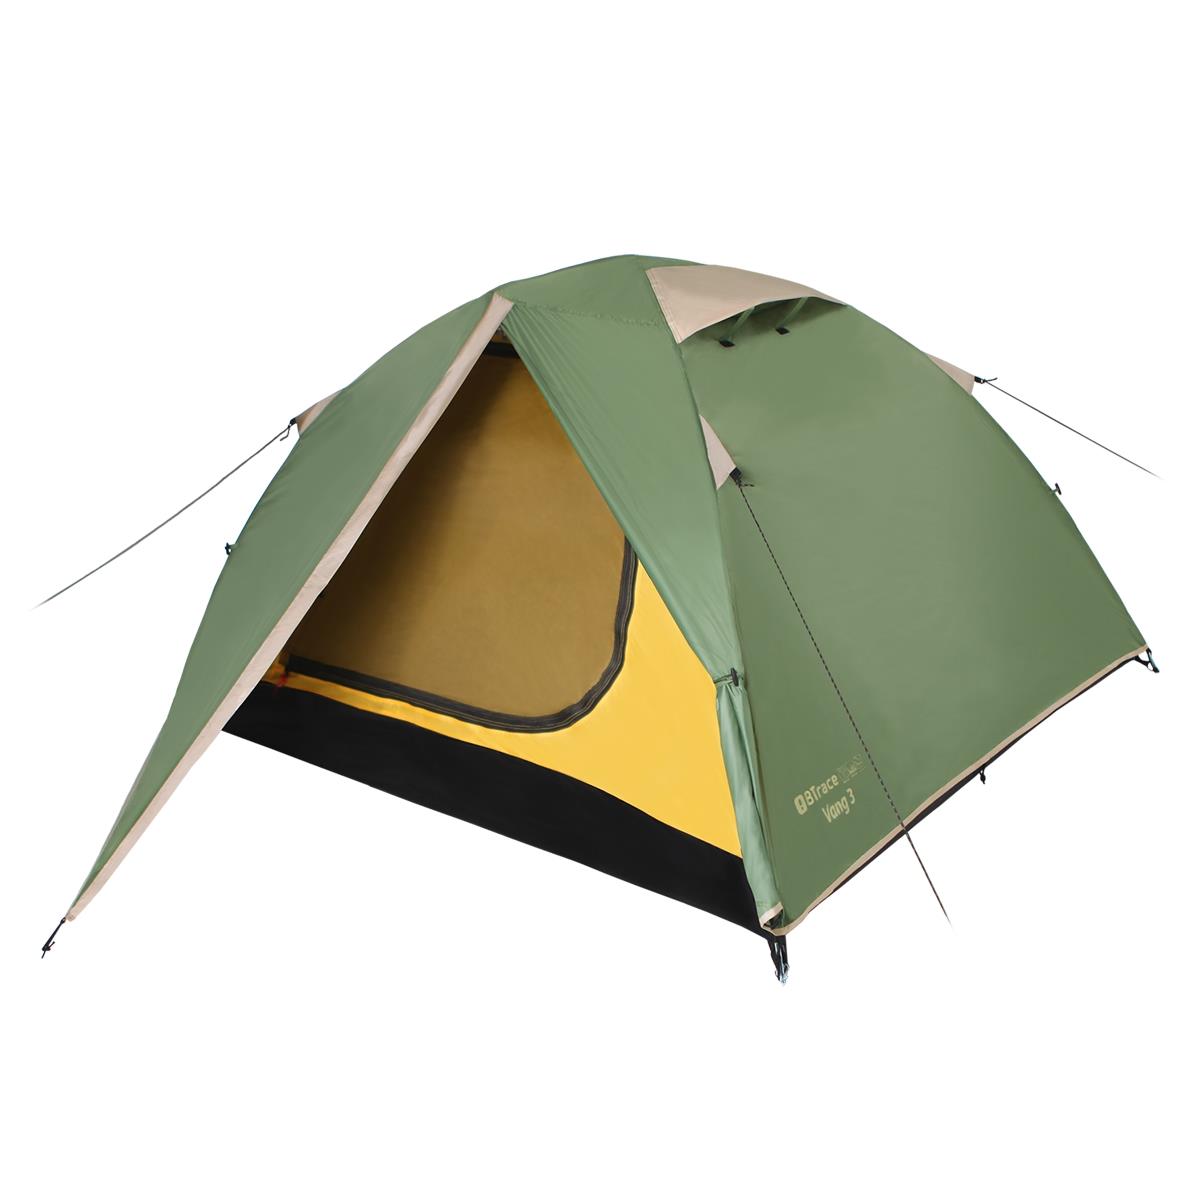 Палатка Vang 3 Зеленый/Бежевый (T0480) BTrace палатка canio 4 t0249 btrace